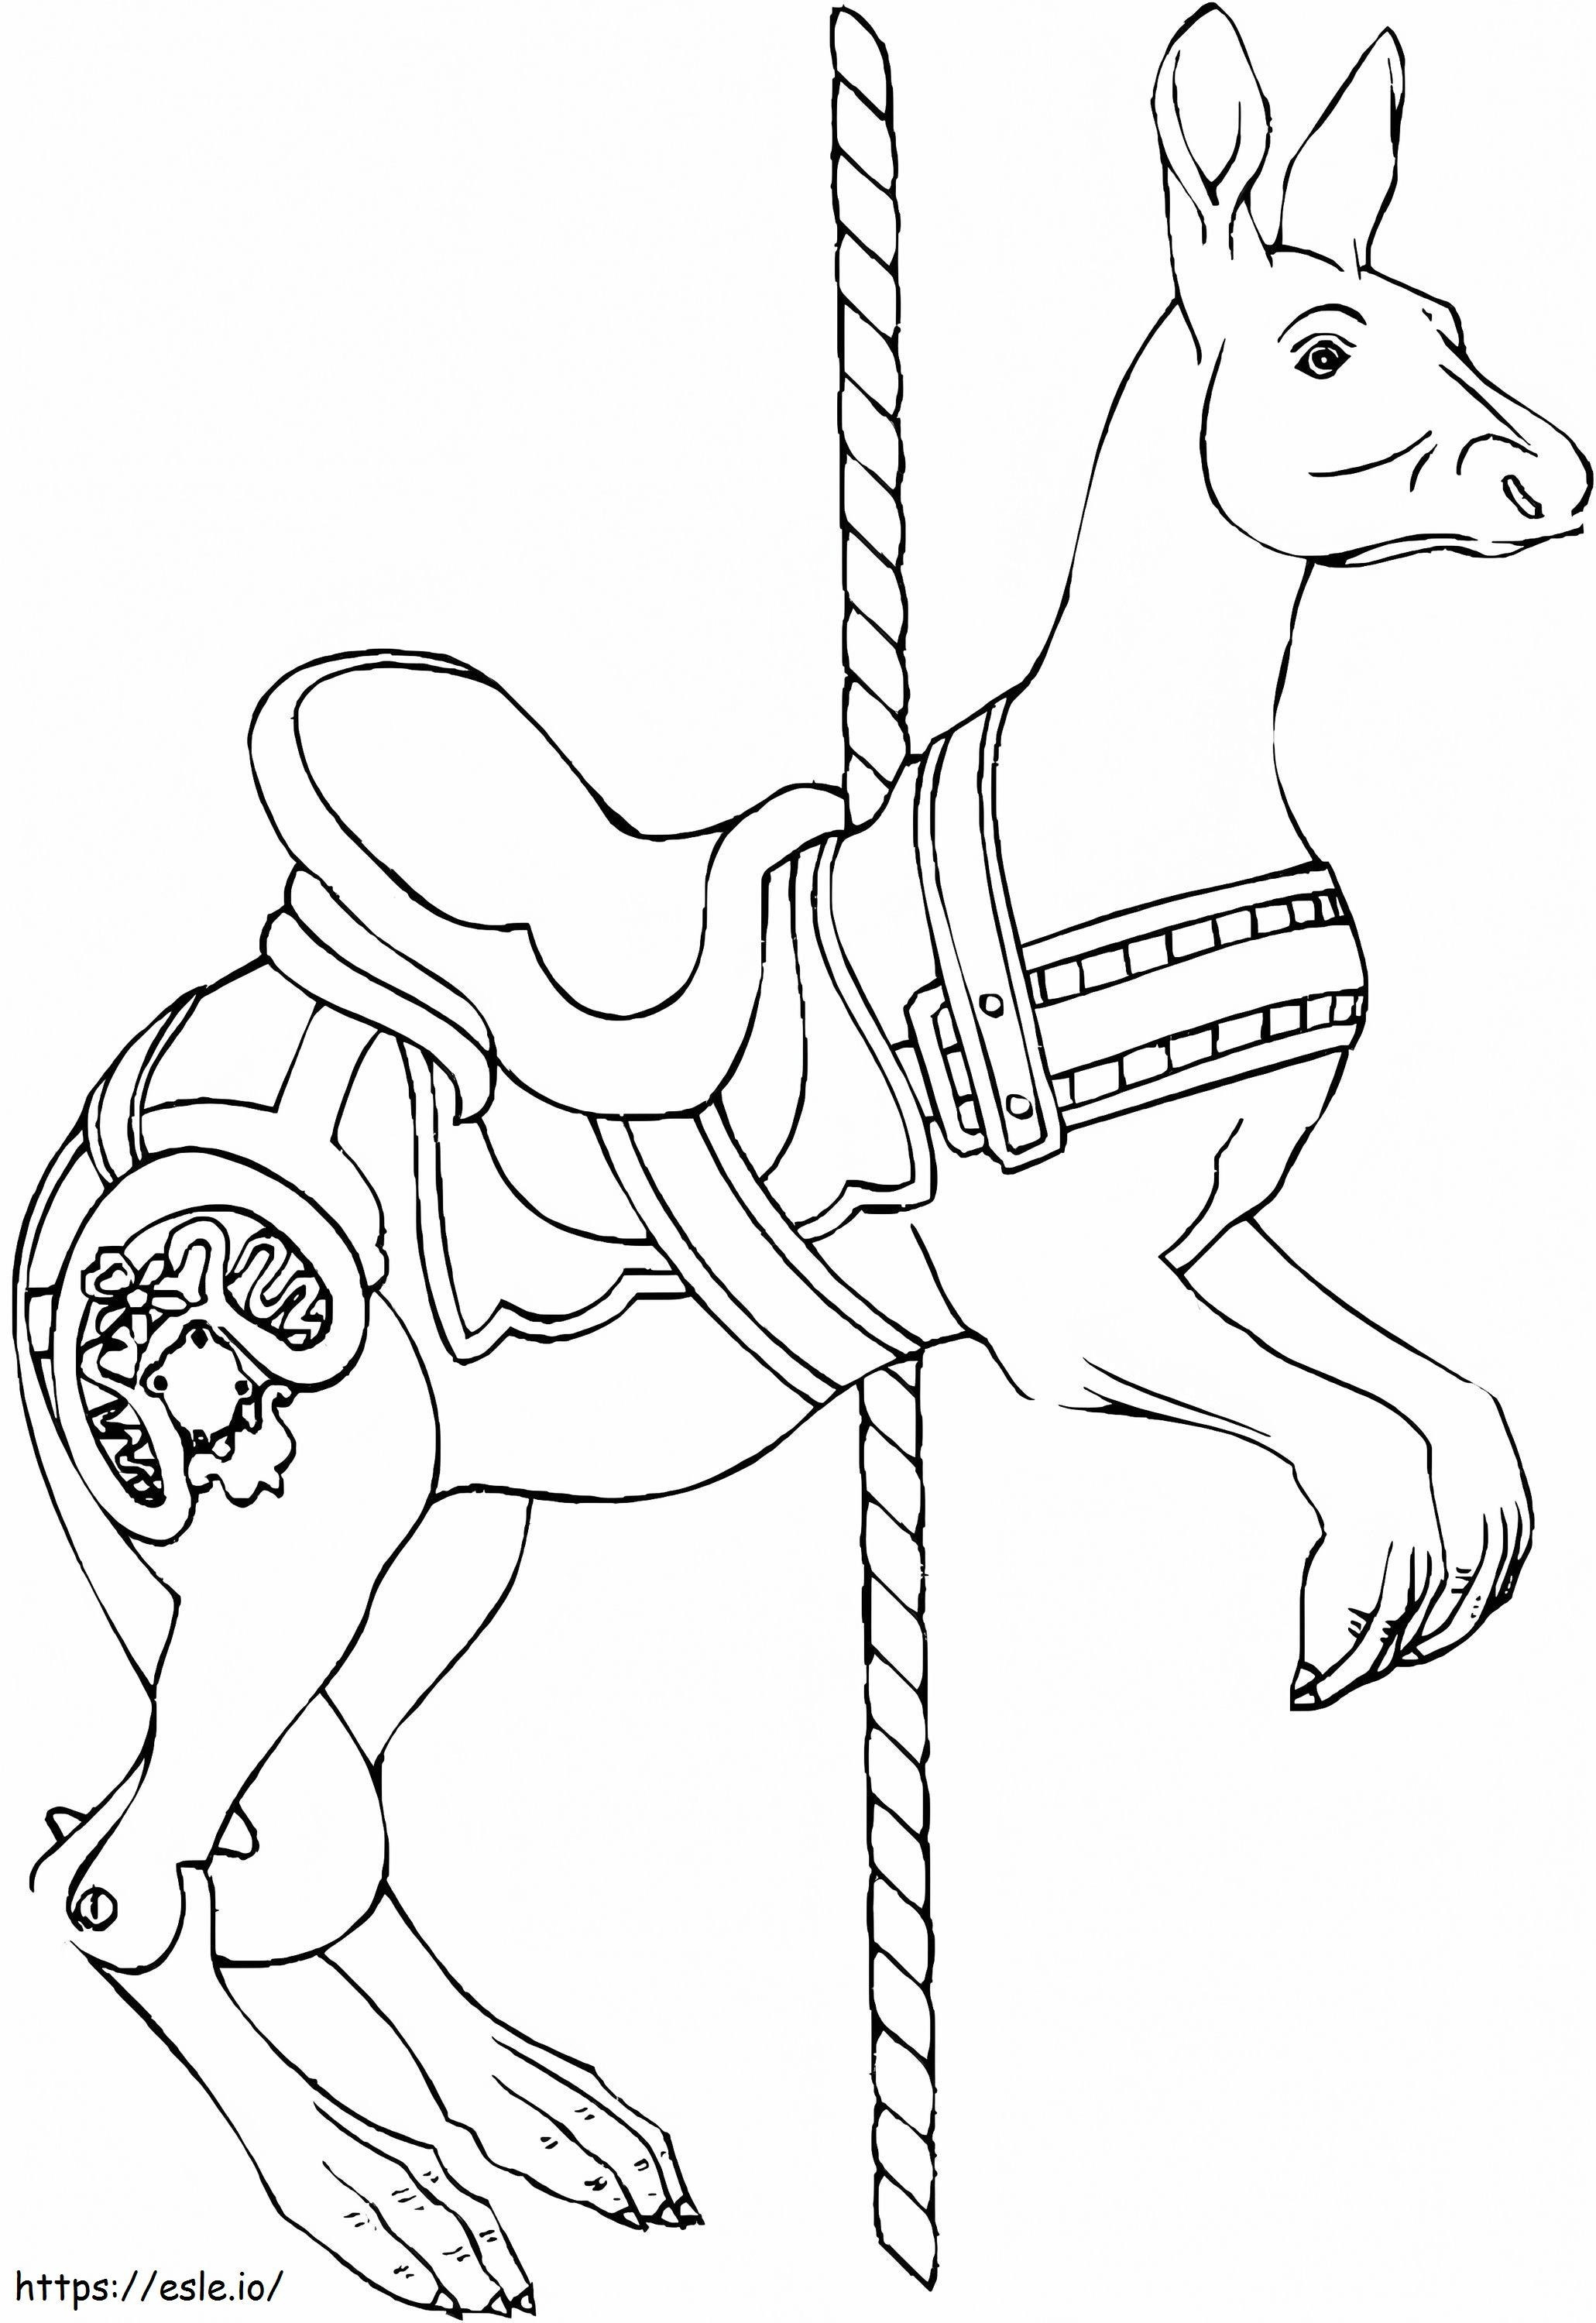 Carousel Kangaroo coloring page